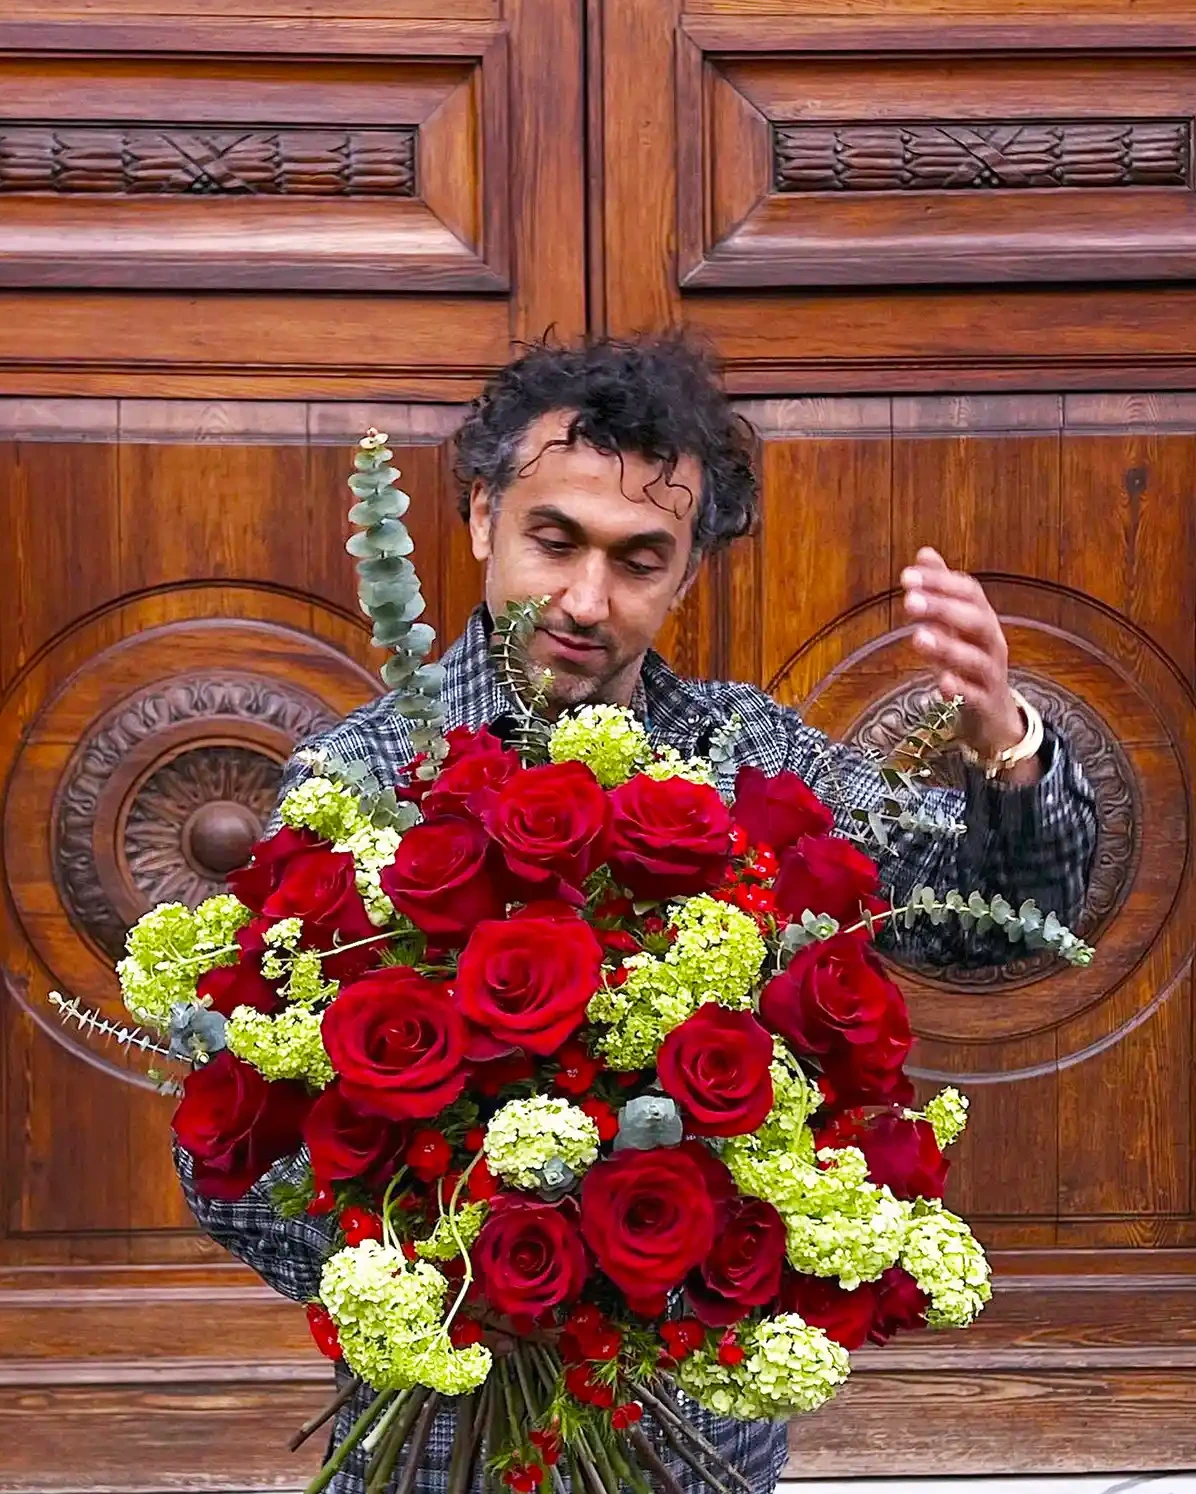 Dmitry Turcan with Explorer roses